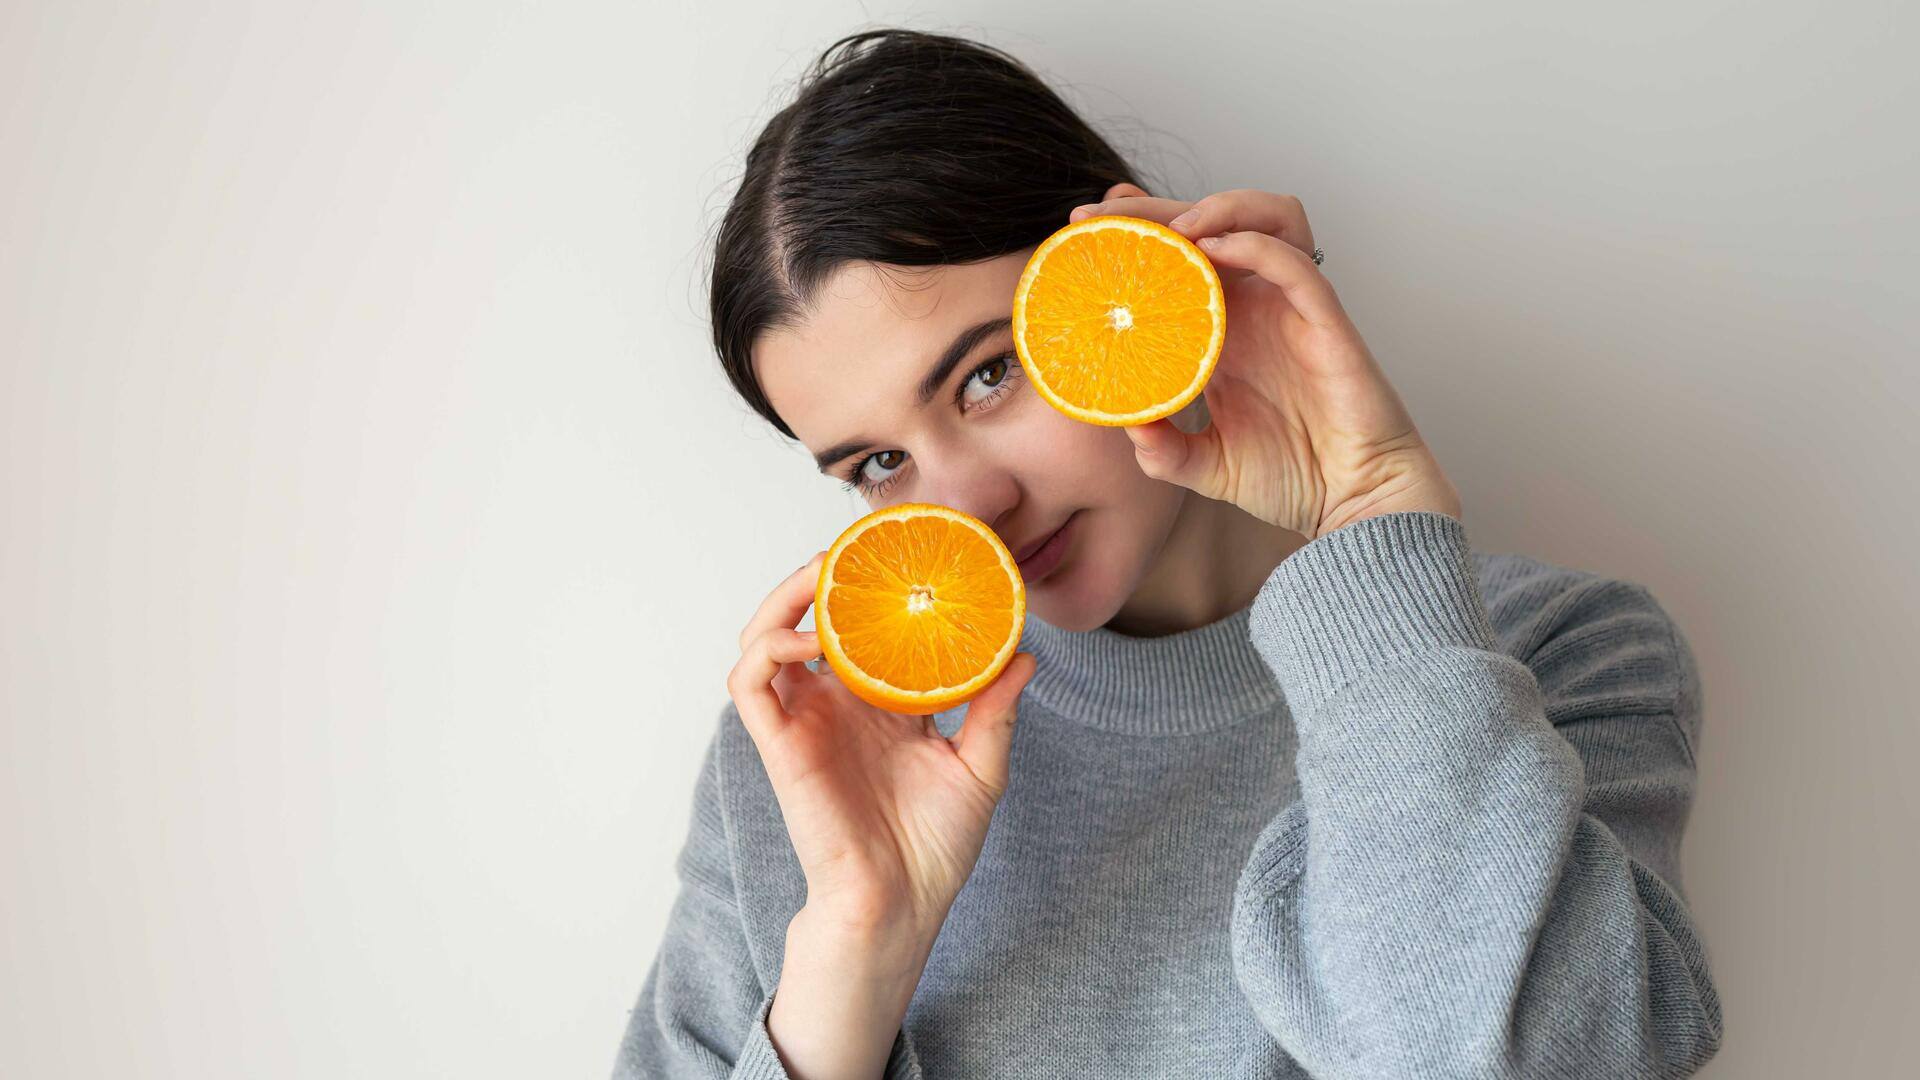 त्वचा को स्वस्थ रखने और निखारने में सहायक हैं संतरे के ये 5 फेस पैक 